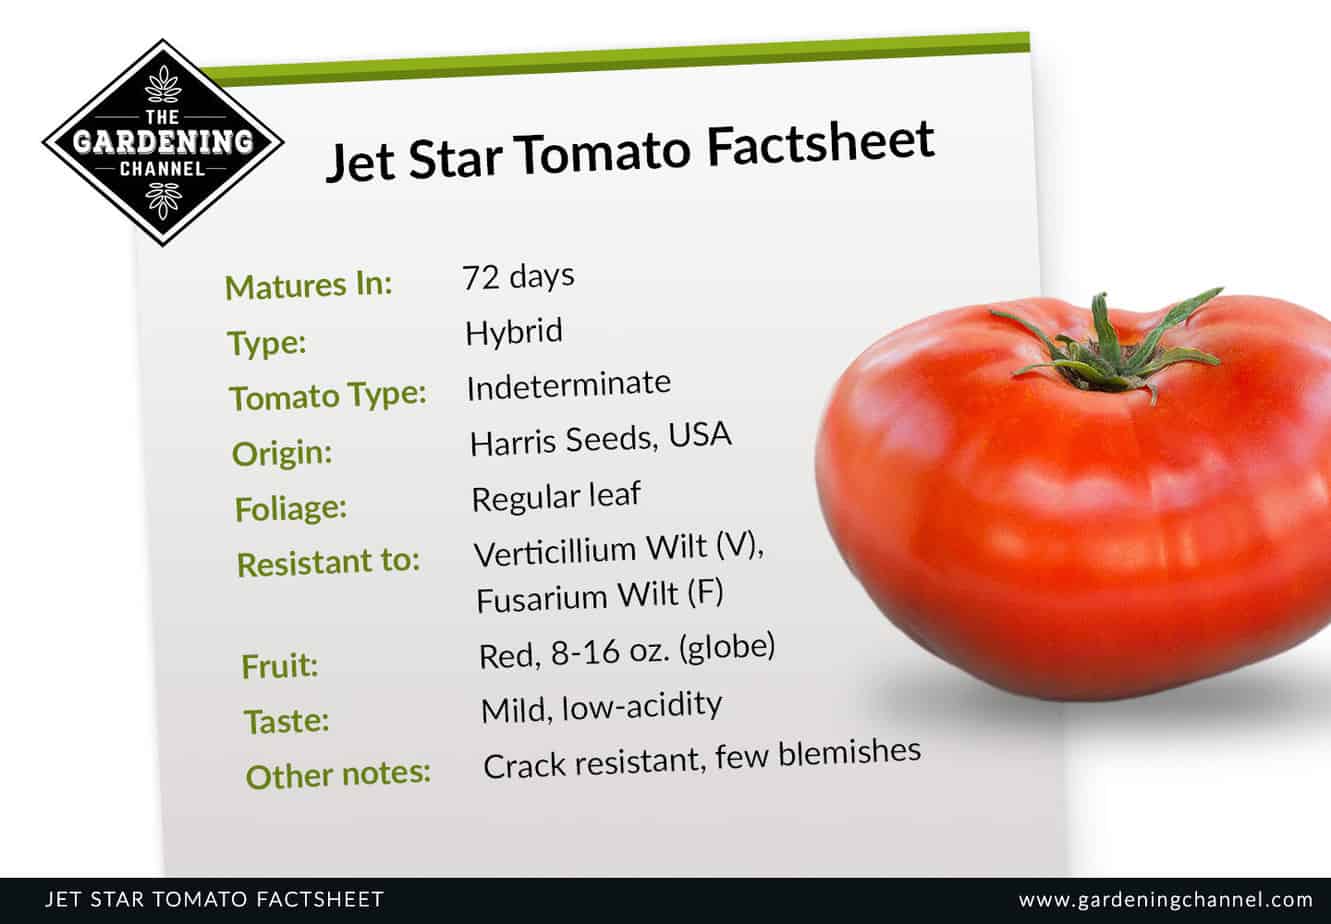 https://www.gardeningchannel.com/wp-content/uploads/2020/10/gardeningchannel-jet-star-tomato-factsheet.jpg